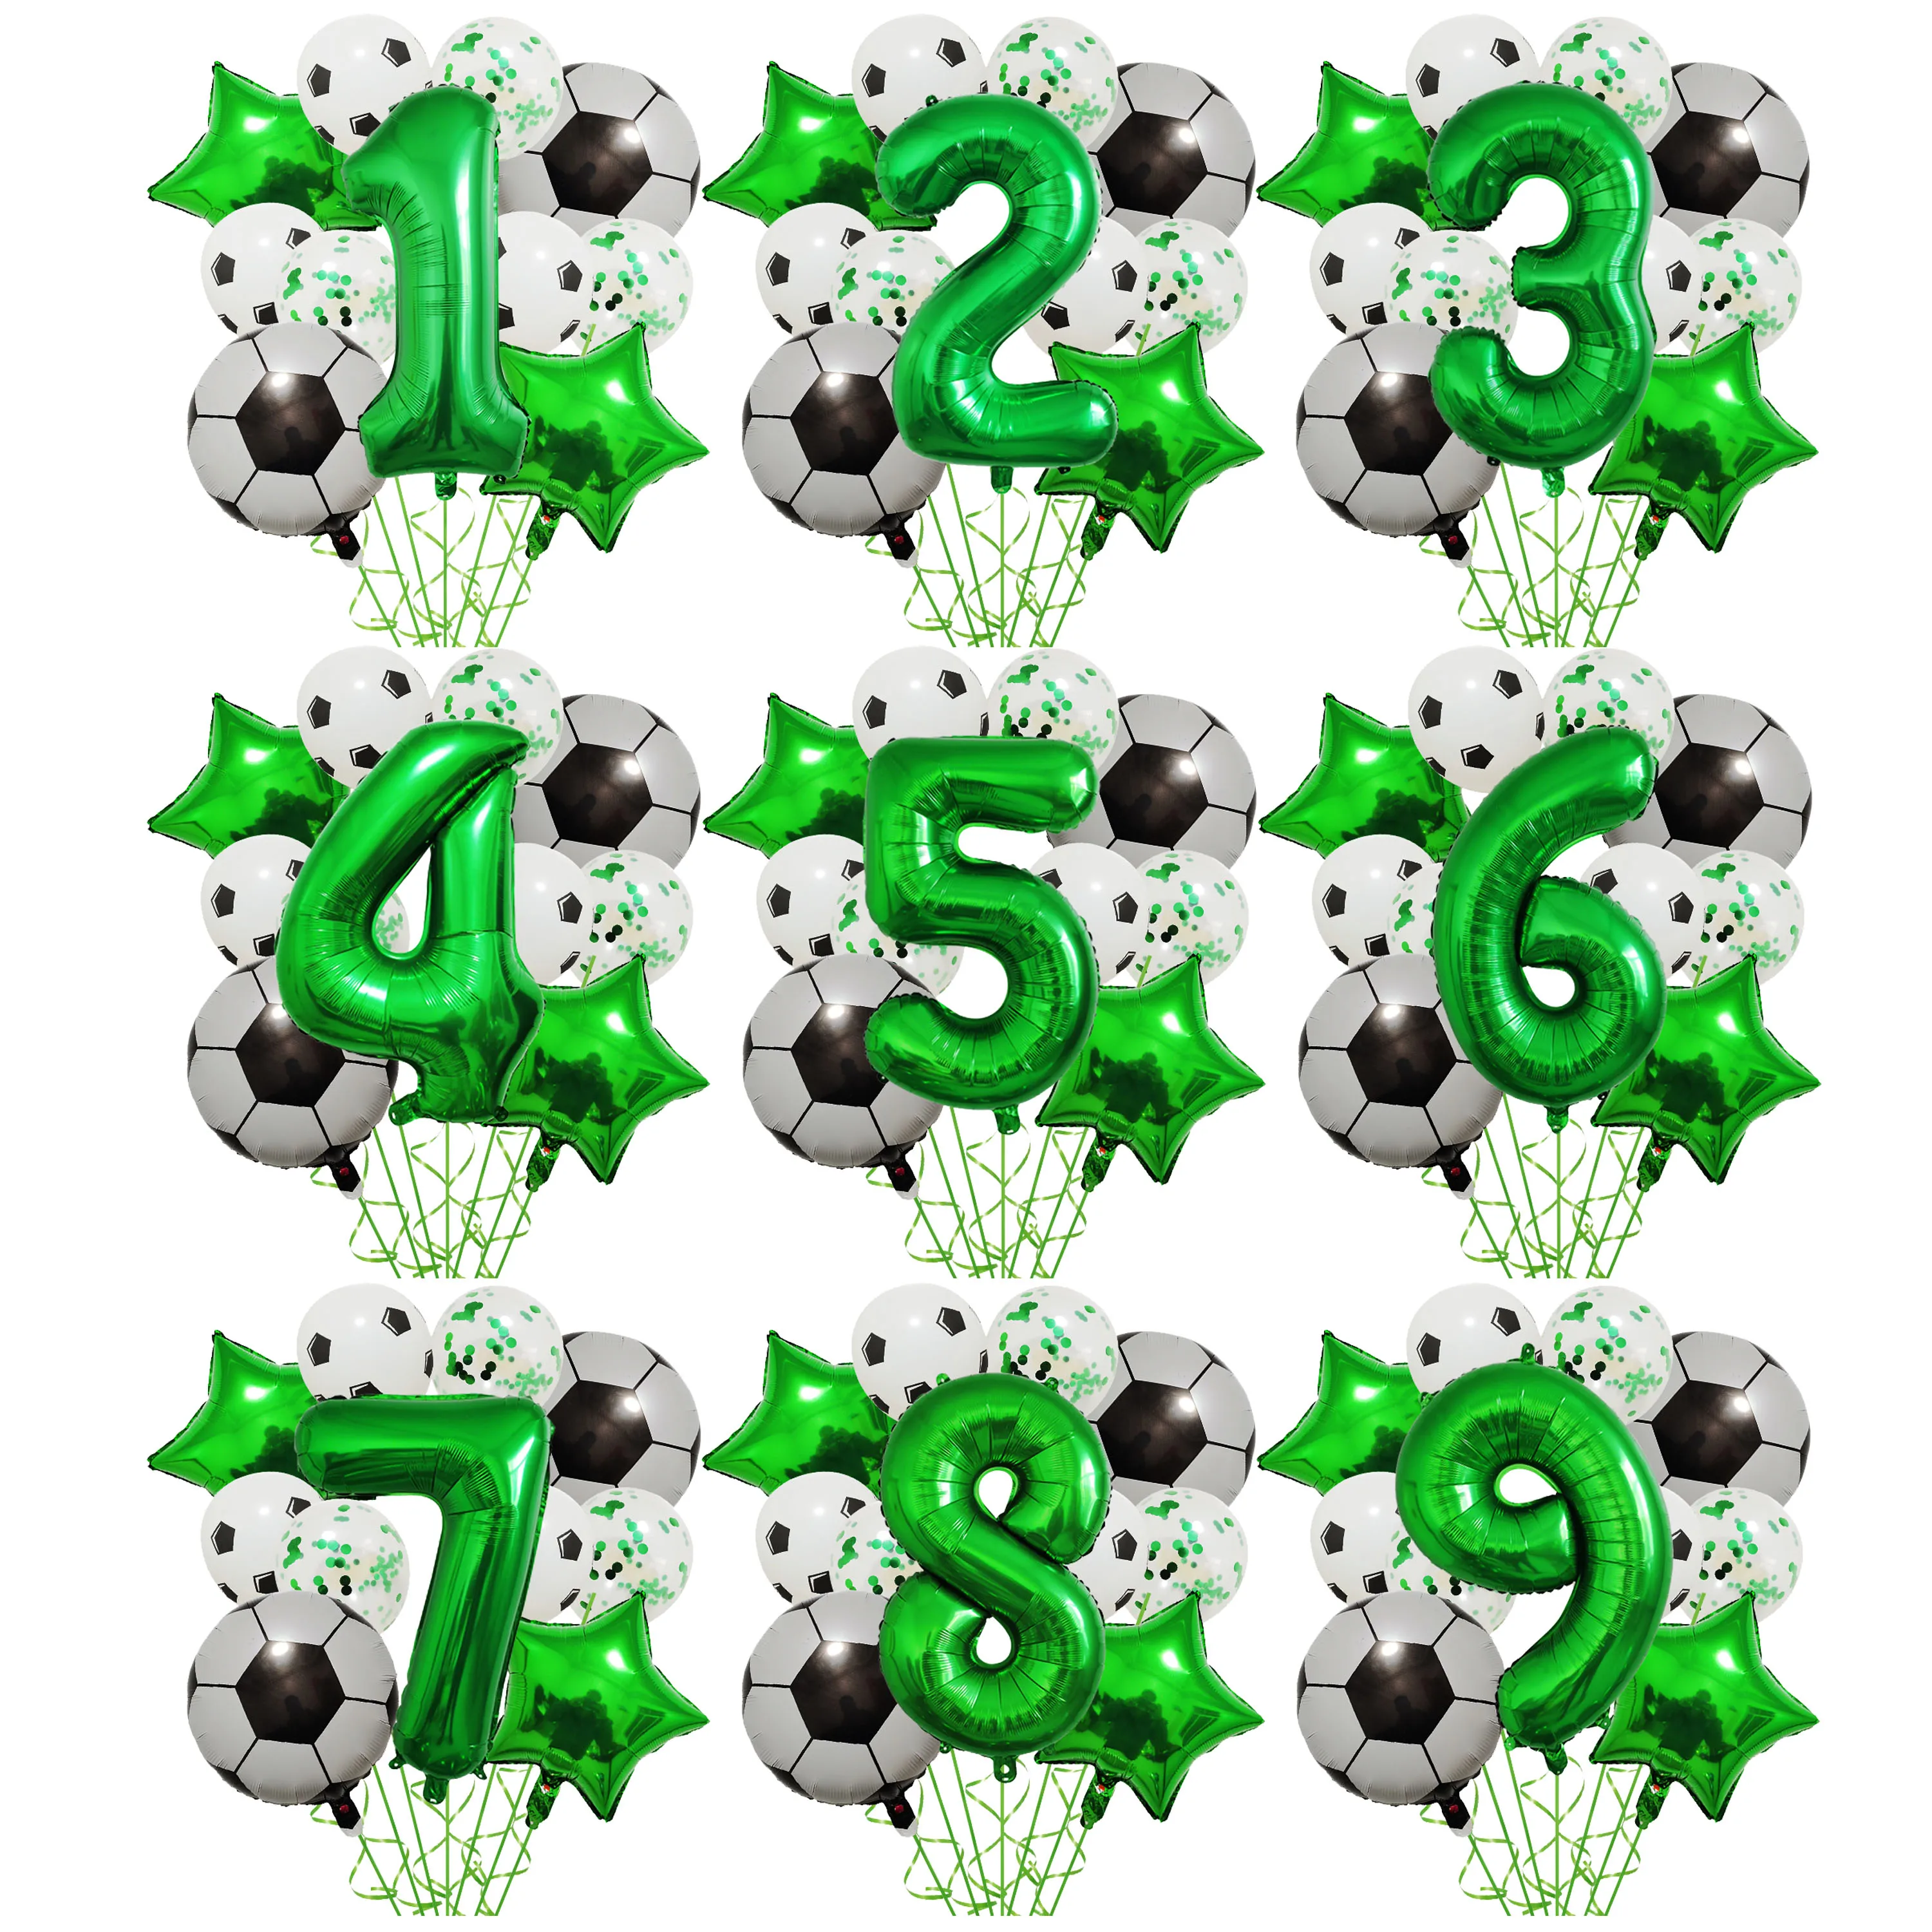 1 комплект / упаковка Воздушных шаров из гелиевой фольги для футбола, украшения для вечеринки по случаю дня рождения мальчика, 32-дюймовые воздушные шары с зелеными номерами, принадлежности для вечеринки